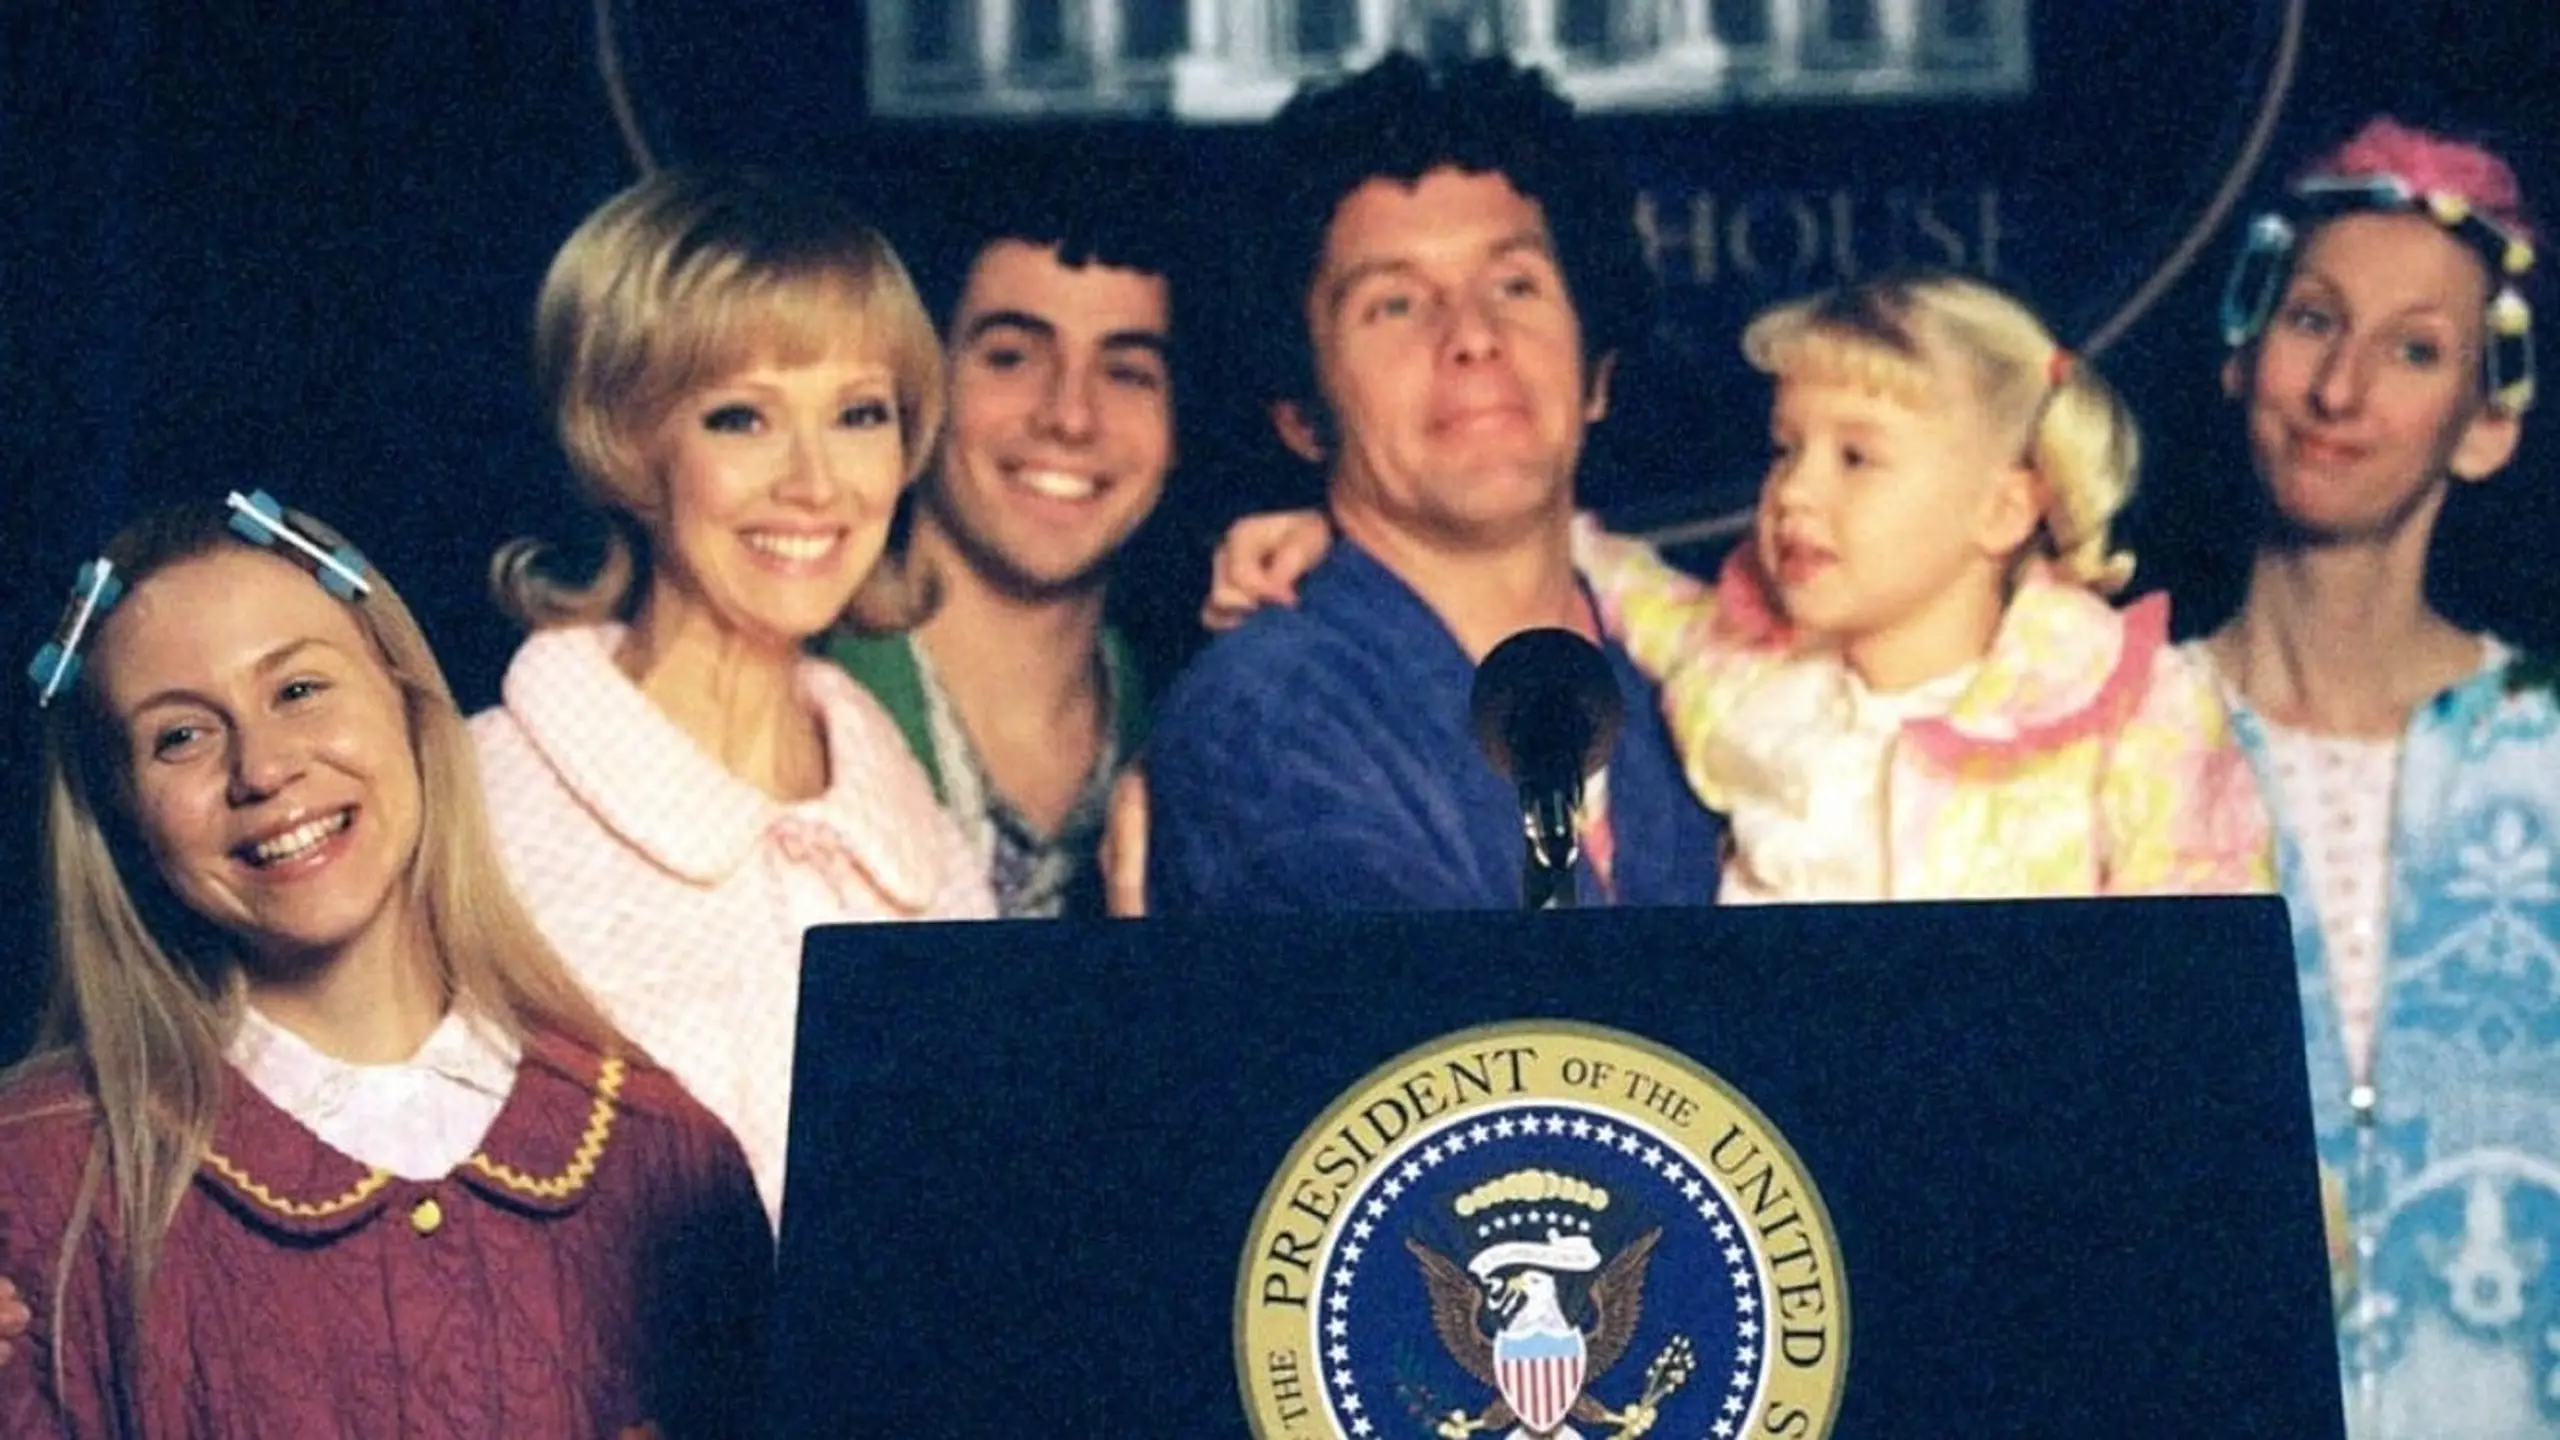 Die Brady Family im Weißen Haus